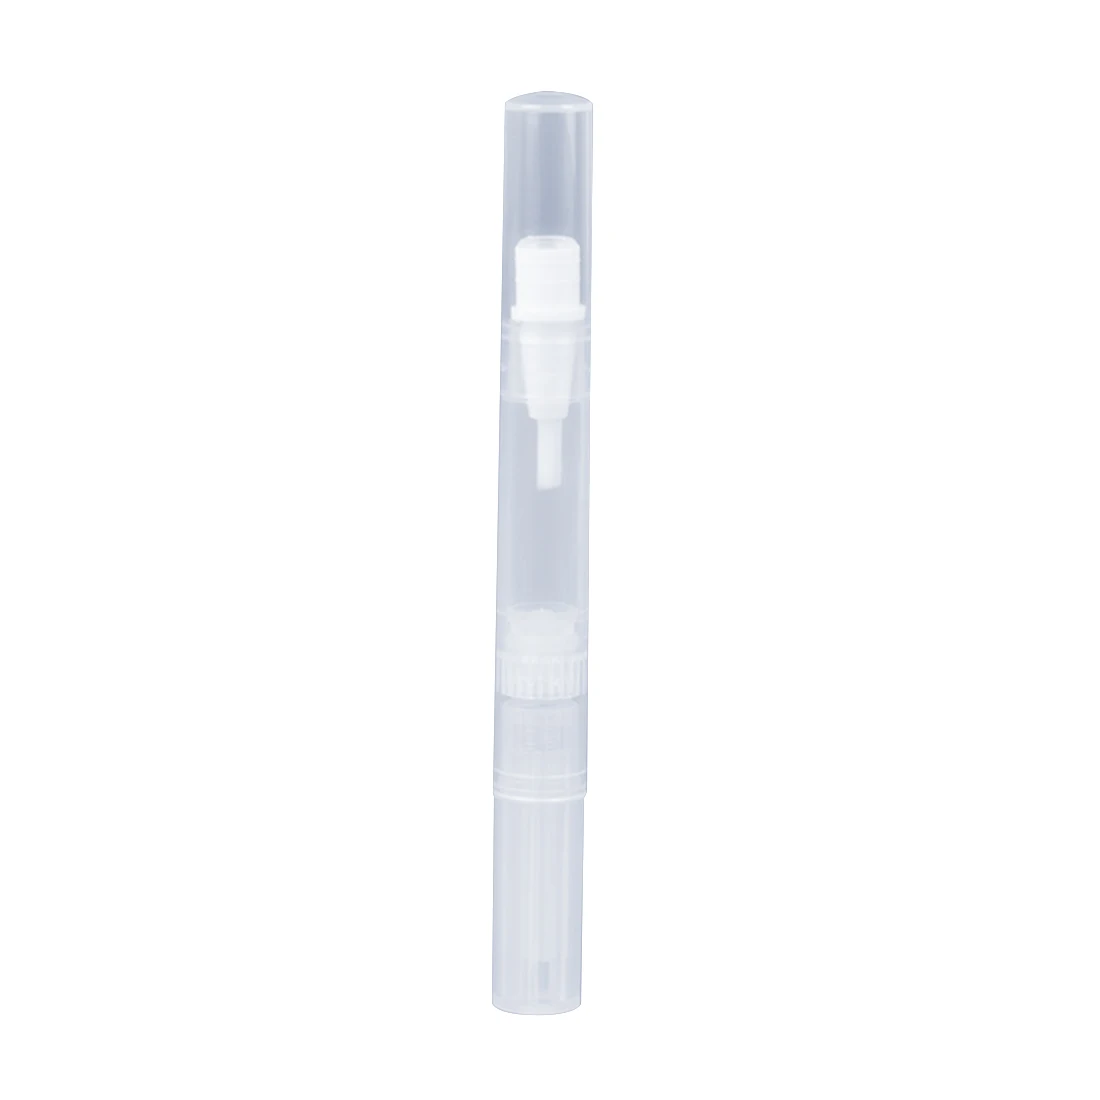 Прозрачный панцири дозирования масла ручка лаки для ногтей кисточки Совет косметический контейнер аппликатор для ресниц роста жидкости